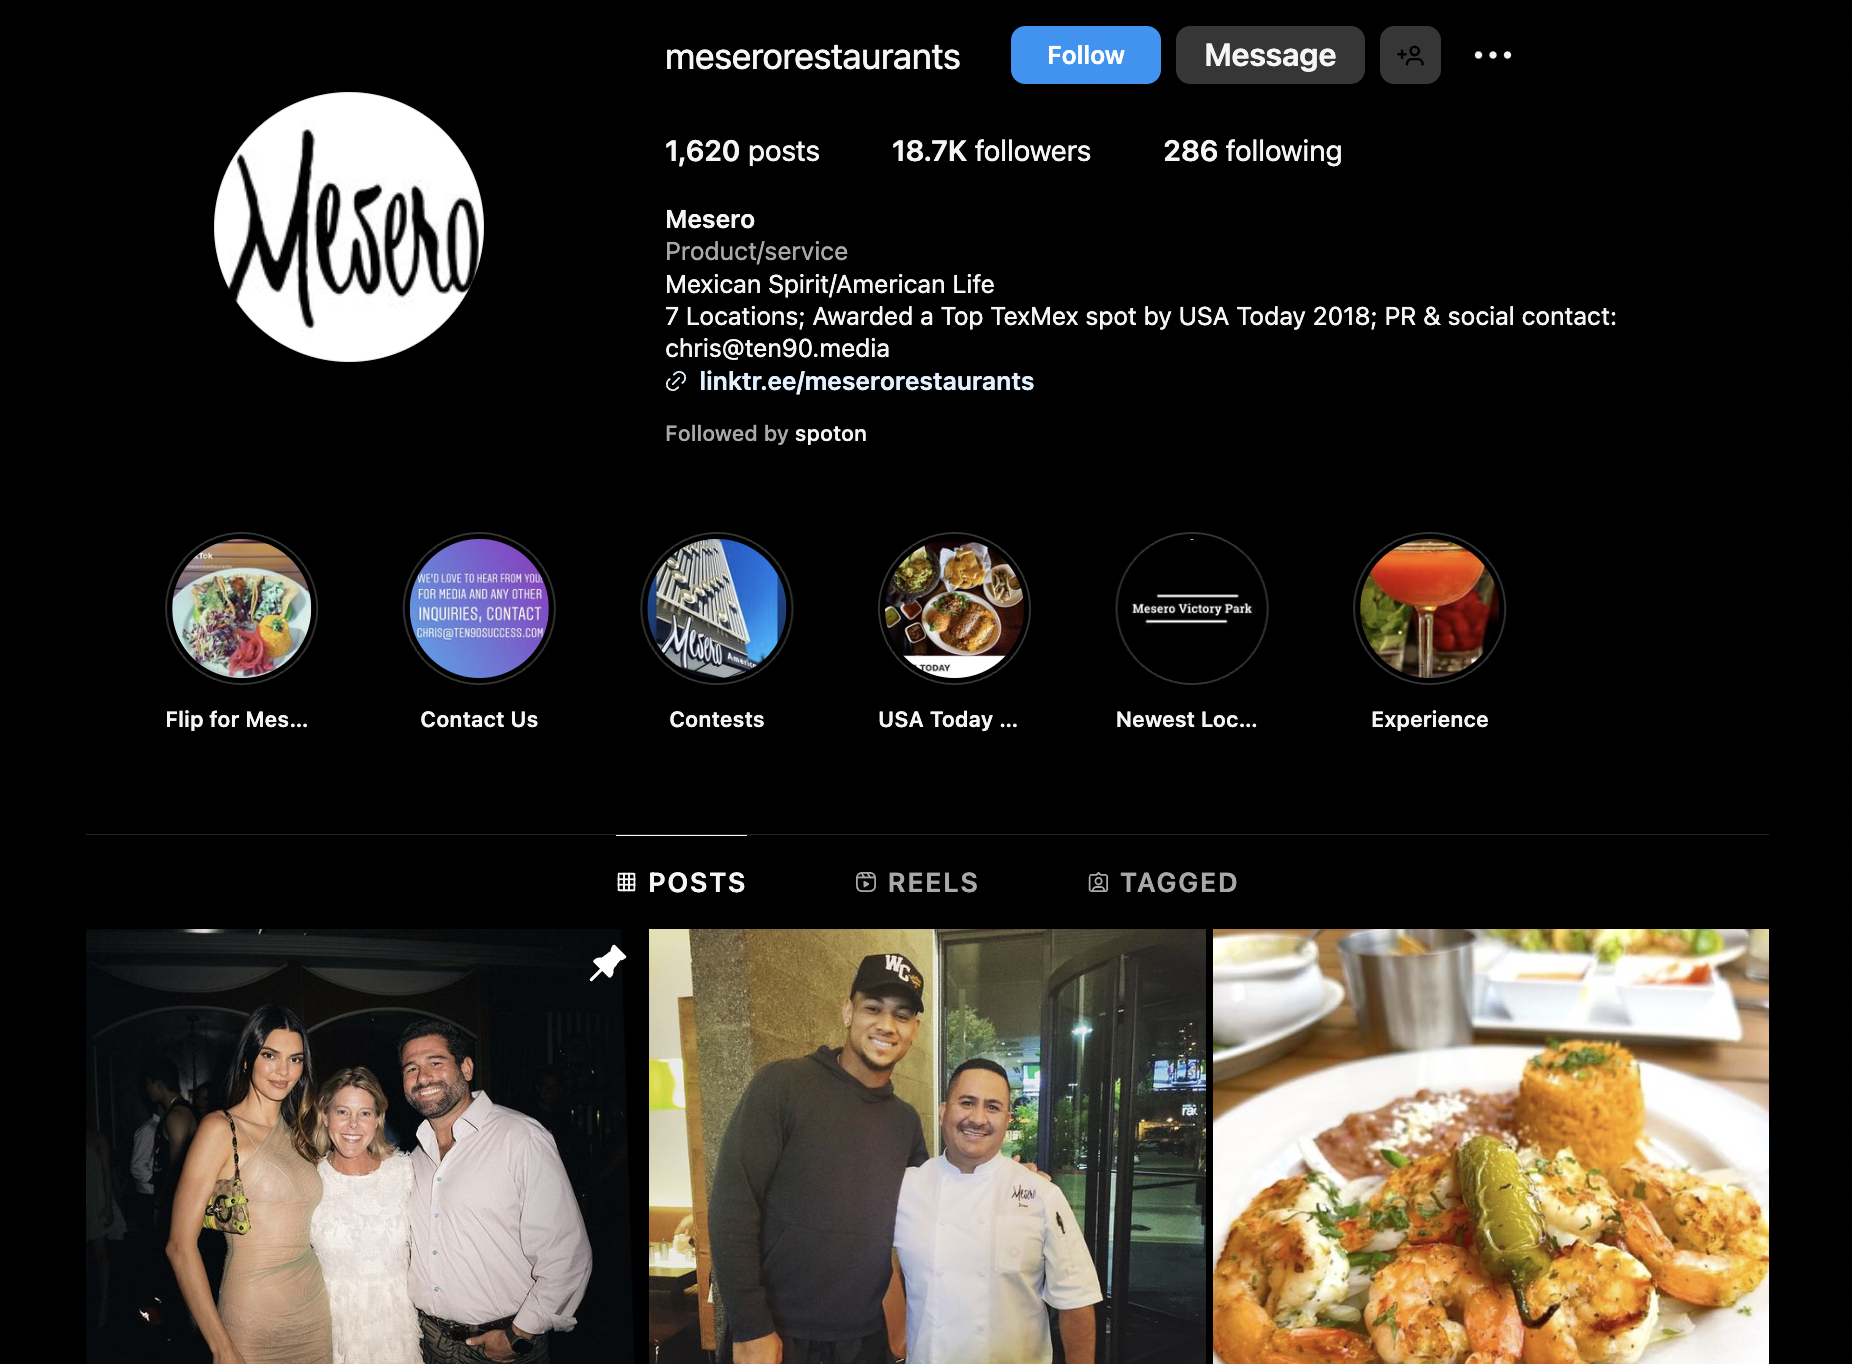 Restaurant Instagram page showcasing restaurant marketing efforts.